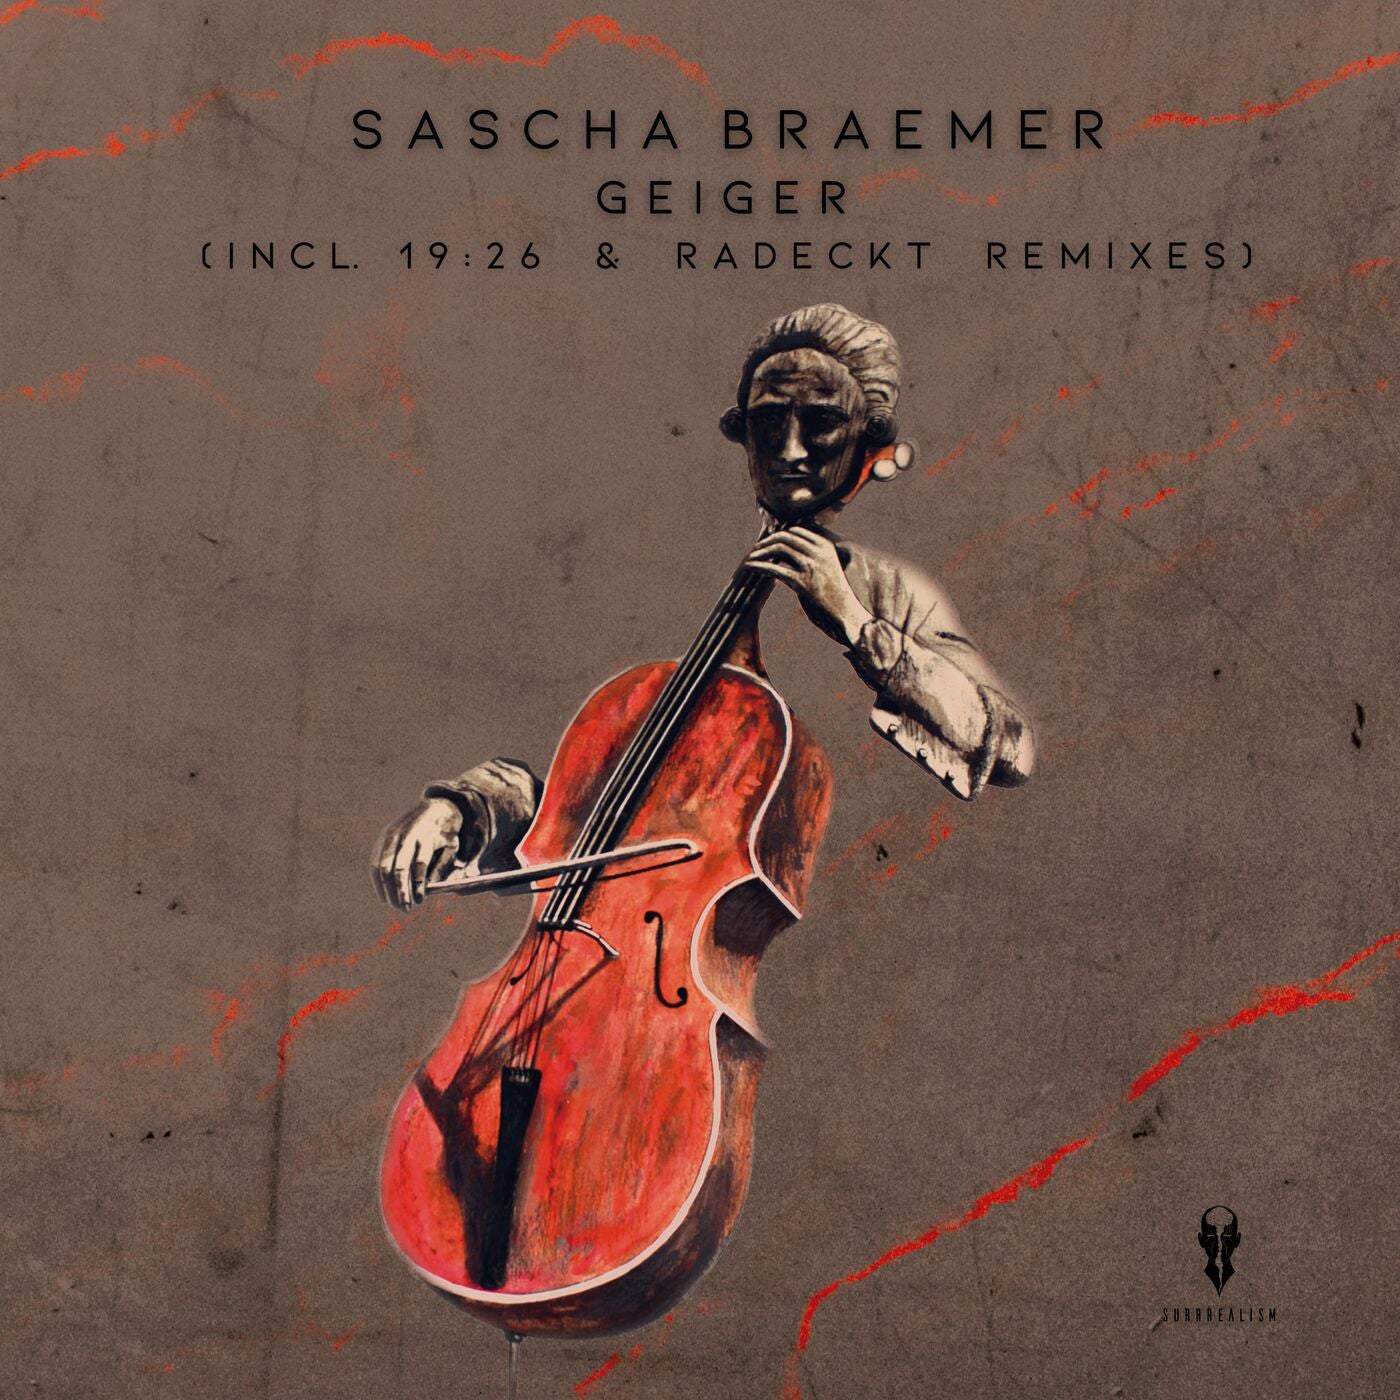 Download Sascha Braemer - Geiger on Electrobuzz